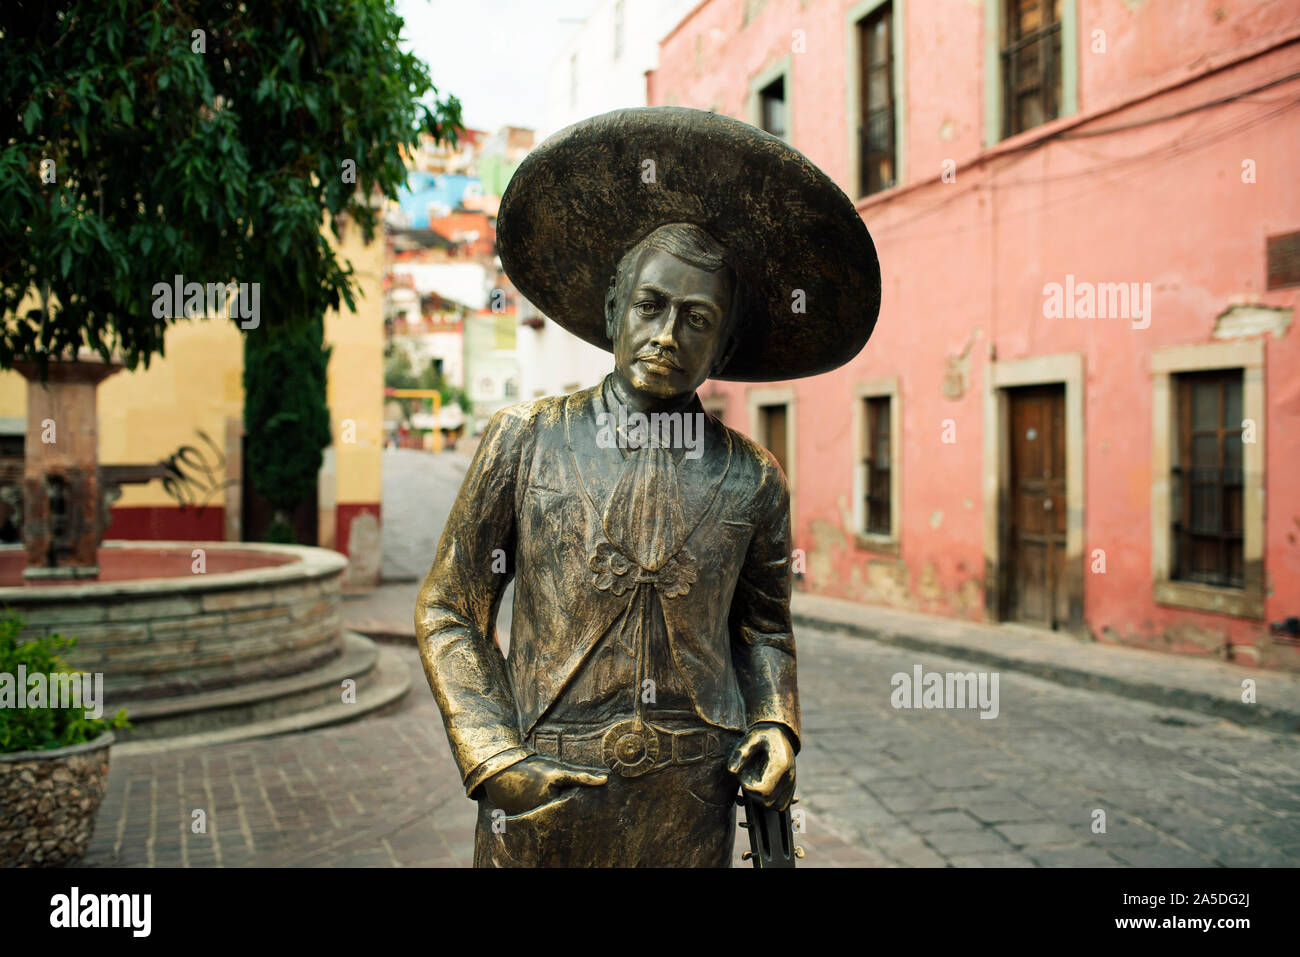 Sculpture en bronze de Jorge Negrete, une célèbre chanteuse et actrice mexicaine de l'âge d'or du cinéma mexicain. Guanajuato, Mexique Banque D'Images